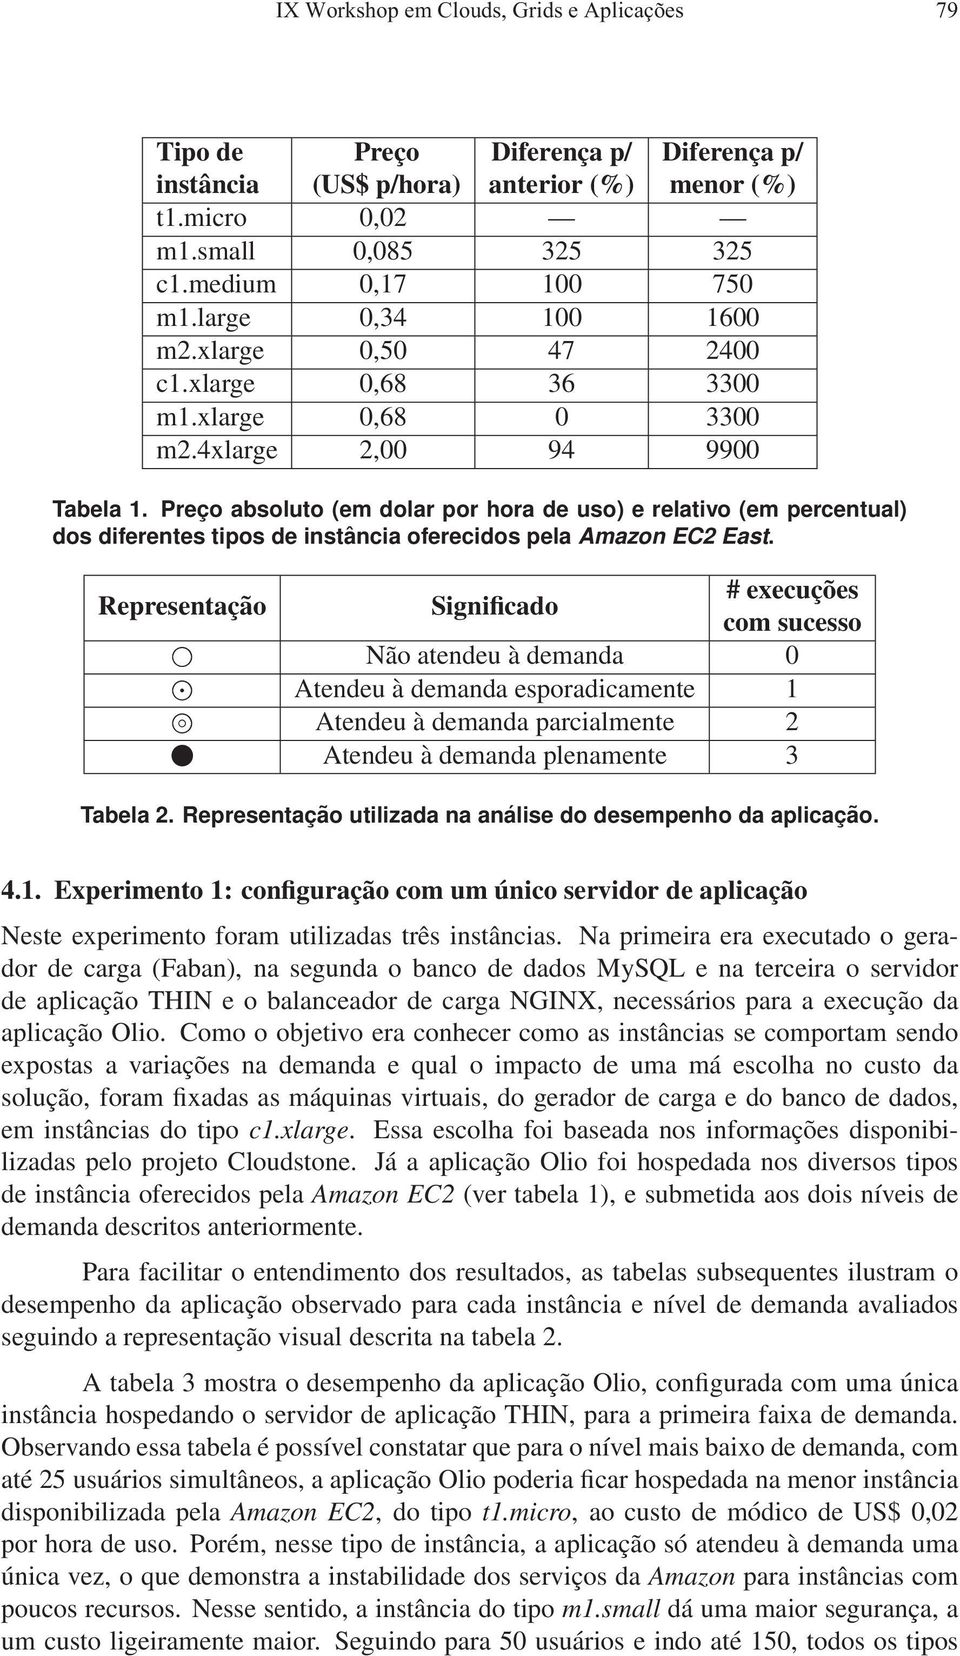 Preço absoluto (em dolar por hora de uso) e relativo (em percentual) dos diferentes tipos de instância oferecidos pela Amazon EC2 East.